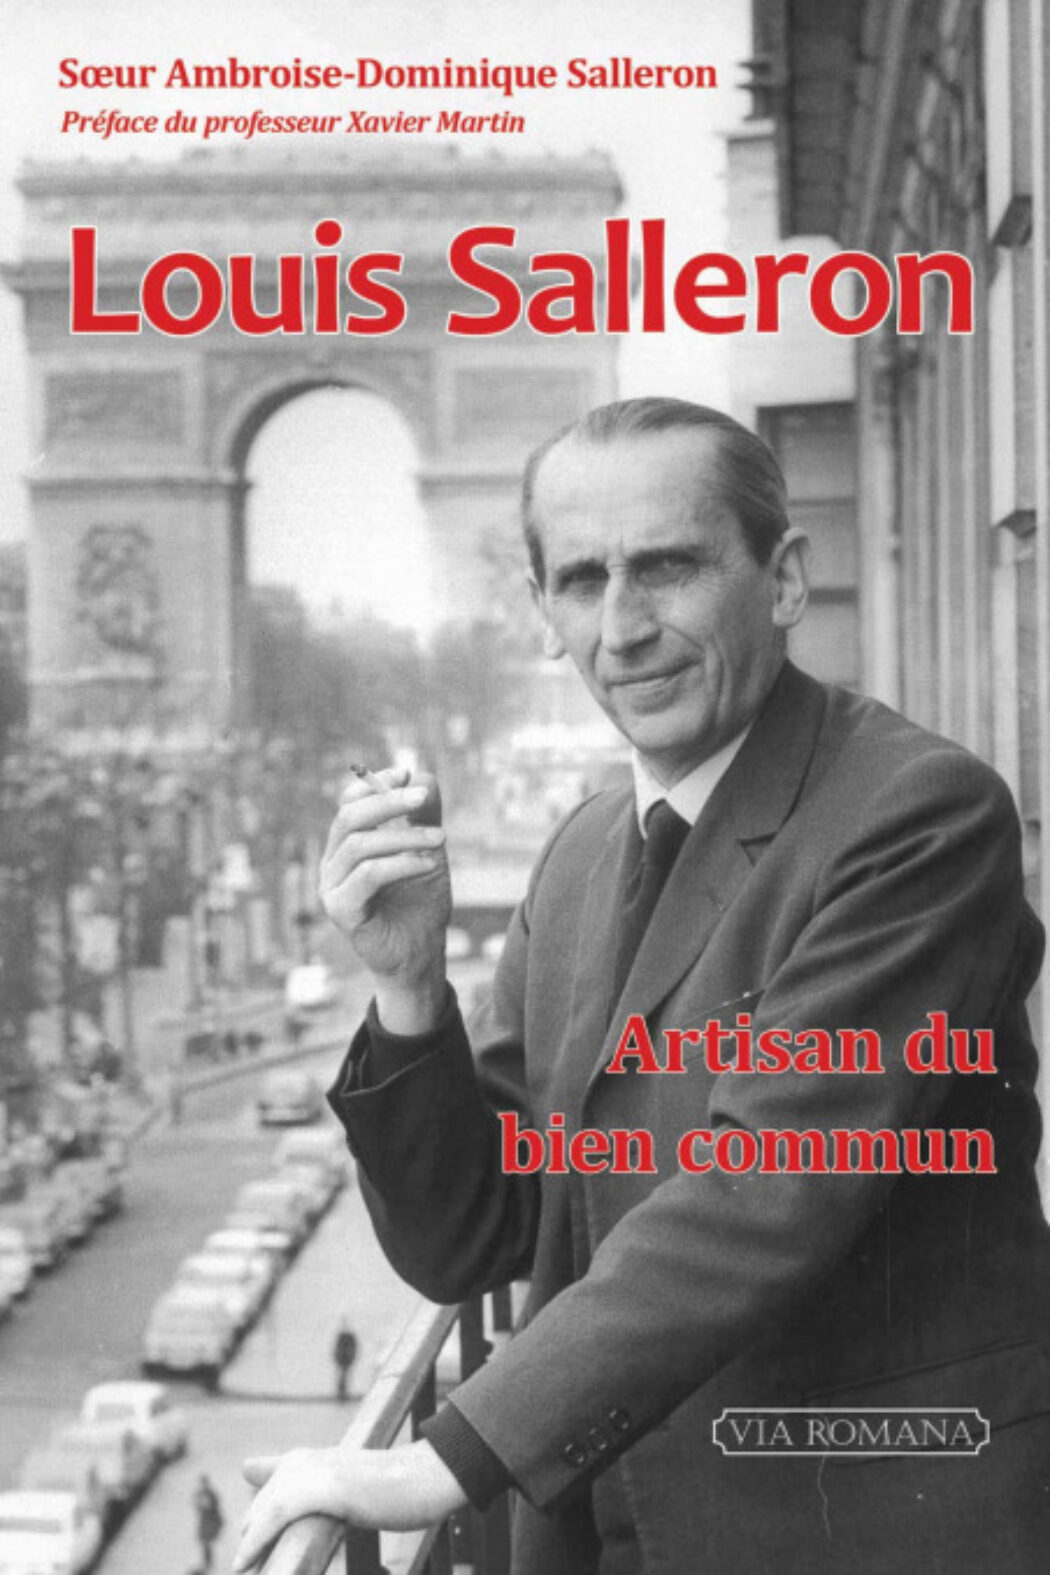 Conférence sur Louis Salleron au Centre Charlier